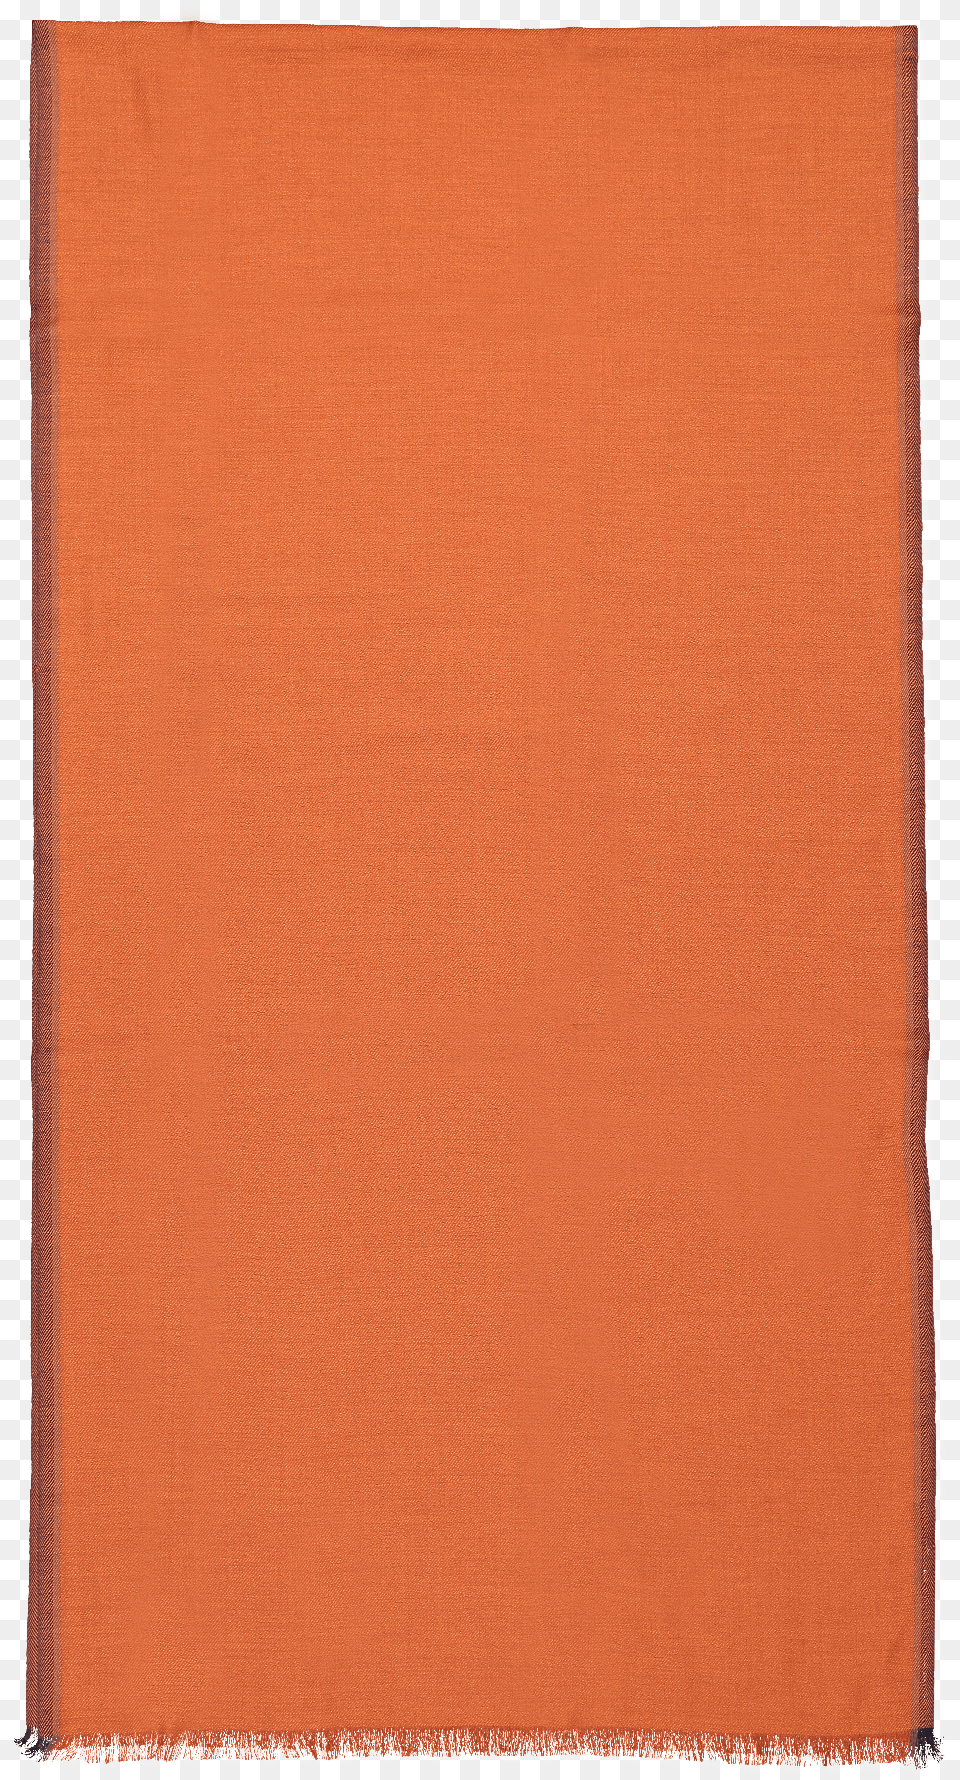 Front Detail Image Of Ermenegildo Zegna Men S Cashmere Construction Paper, Book, Home Decor, Linen, Publication Free Png Download